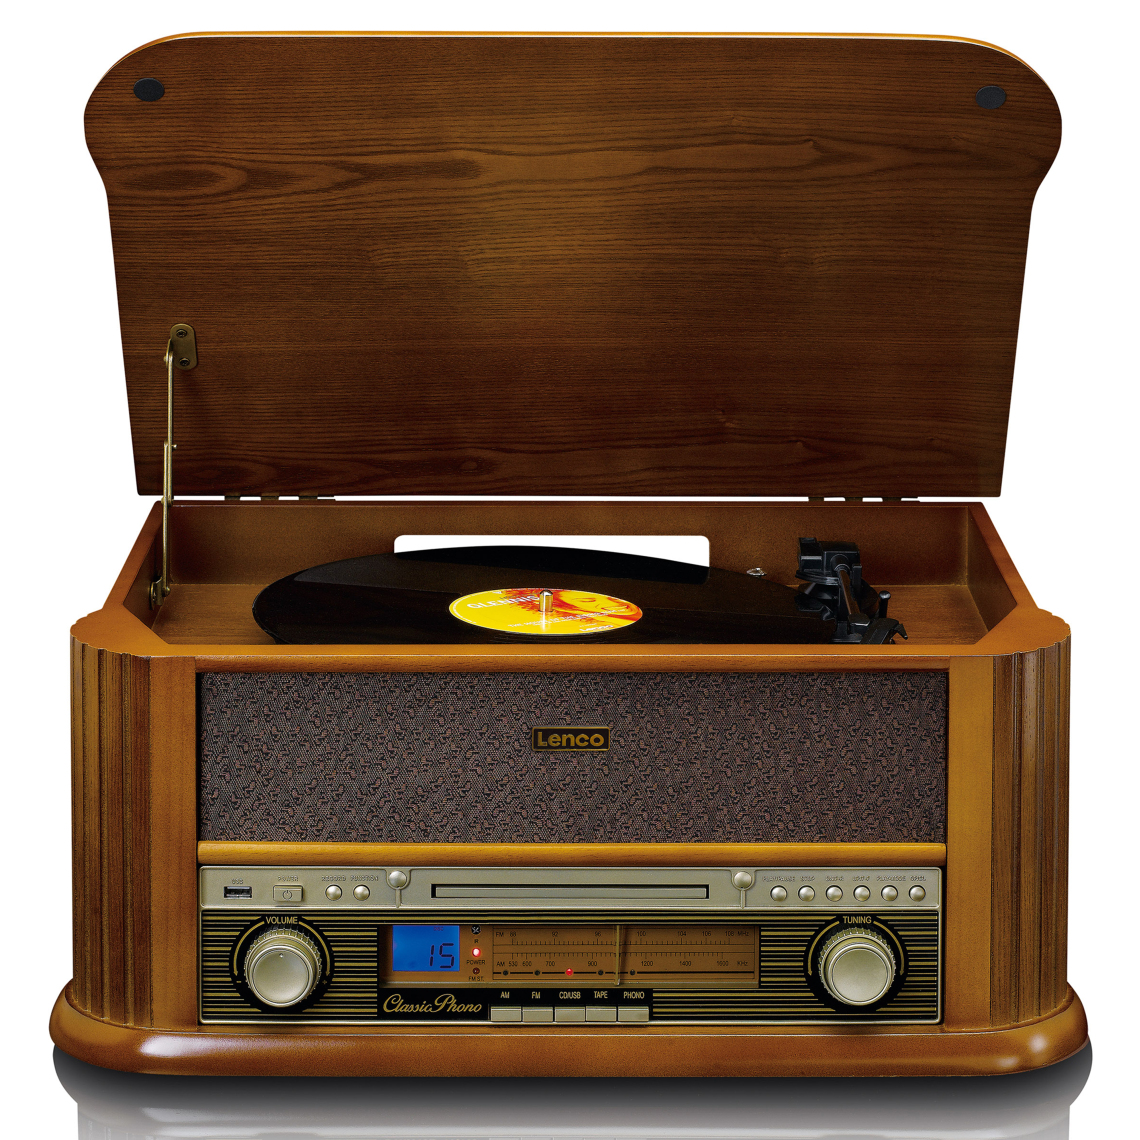 Lenco - Platine vinyle avec radio DAB+ / FM, enregistreur USB, lecteur de CD et de cassettes TCD-2550 Bois - Platine